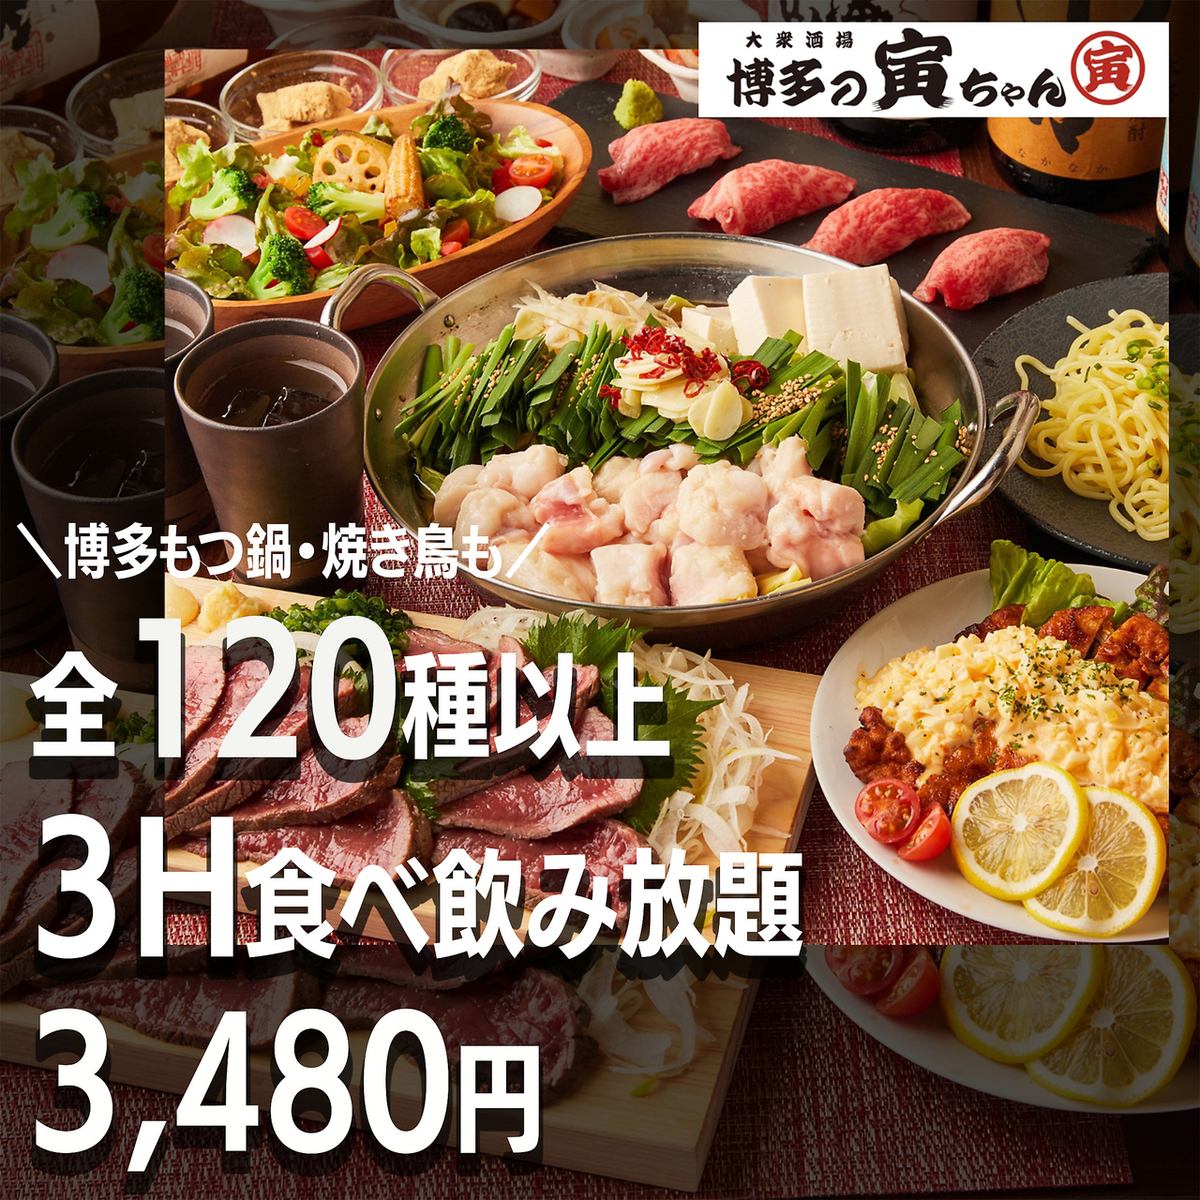 距横滨站3分钟♪ 可以尽情享用正宗内脏火锅和严选烤鸡肉串的人气博多居酒屋开业了！